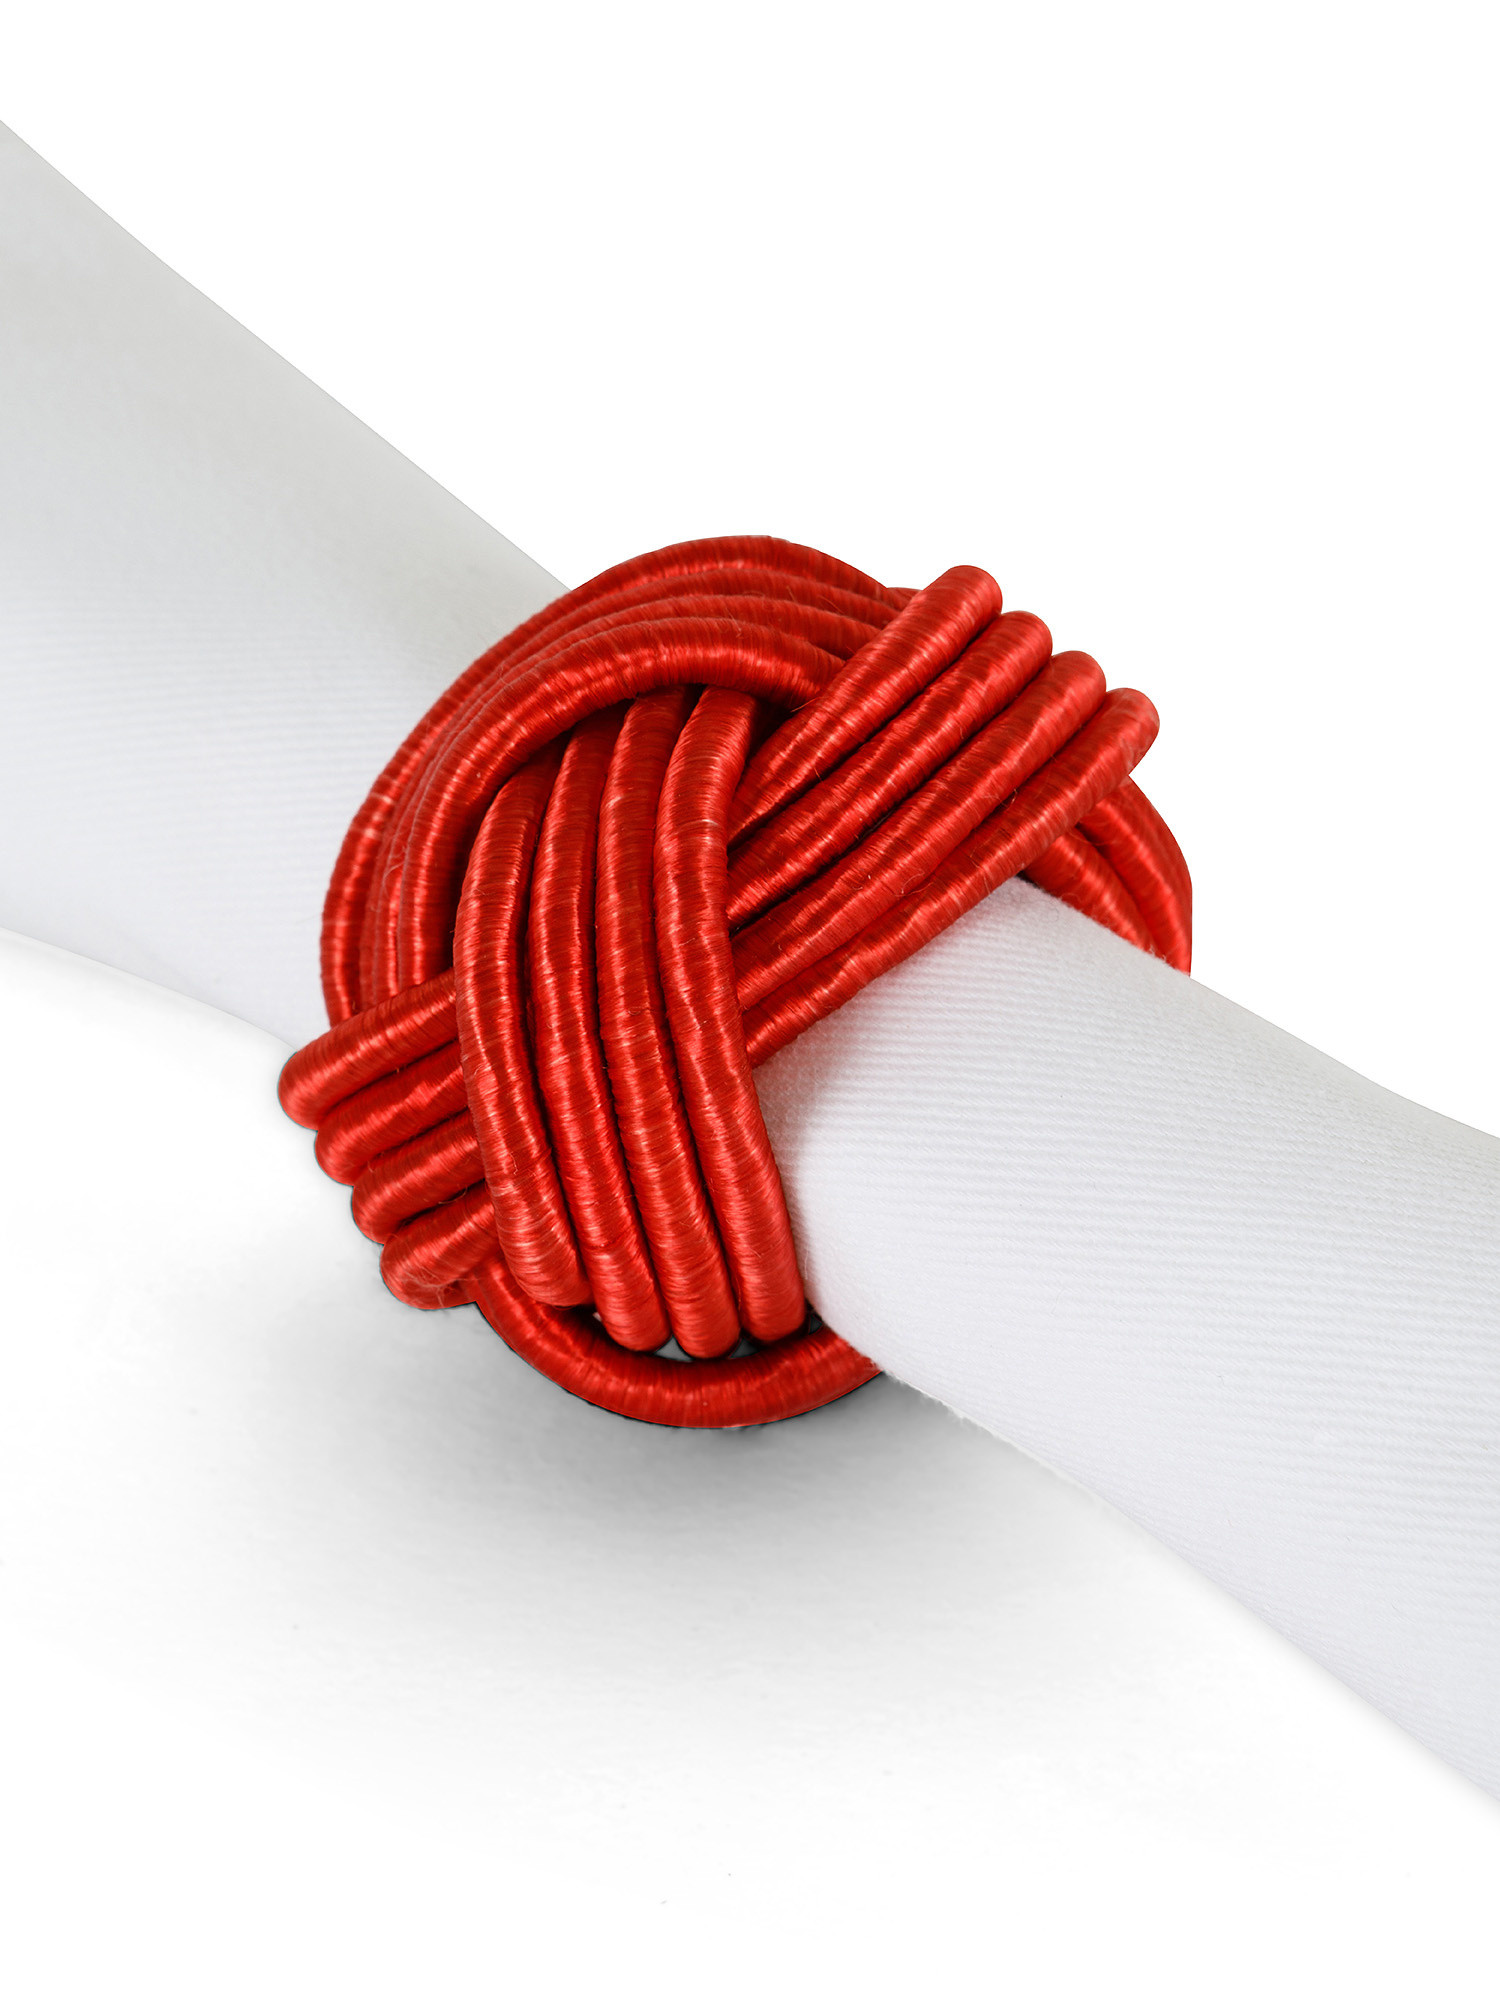 Knot cotton napkin holder, Multicolor, large image number 1